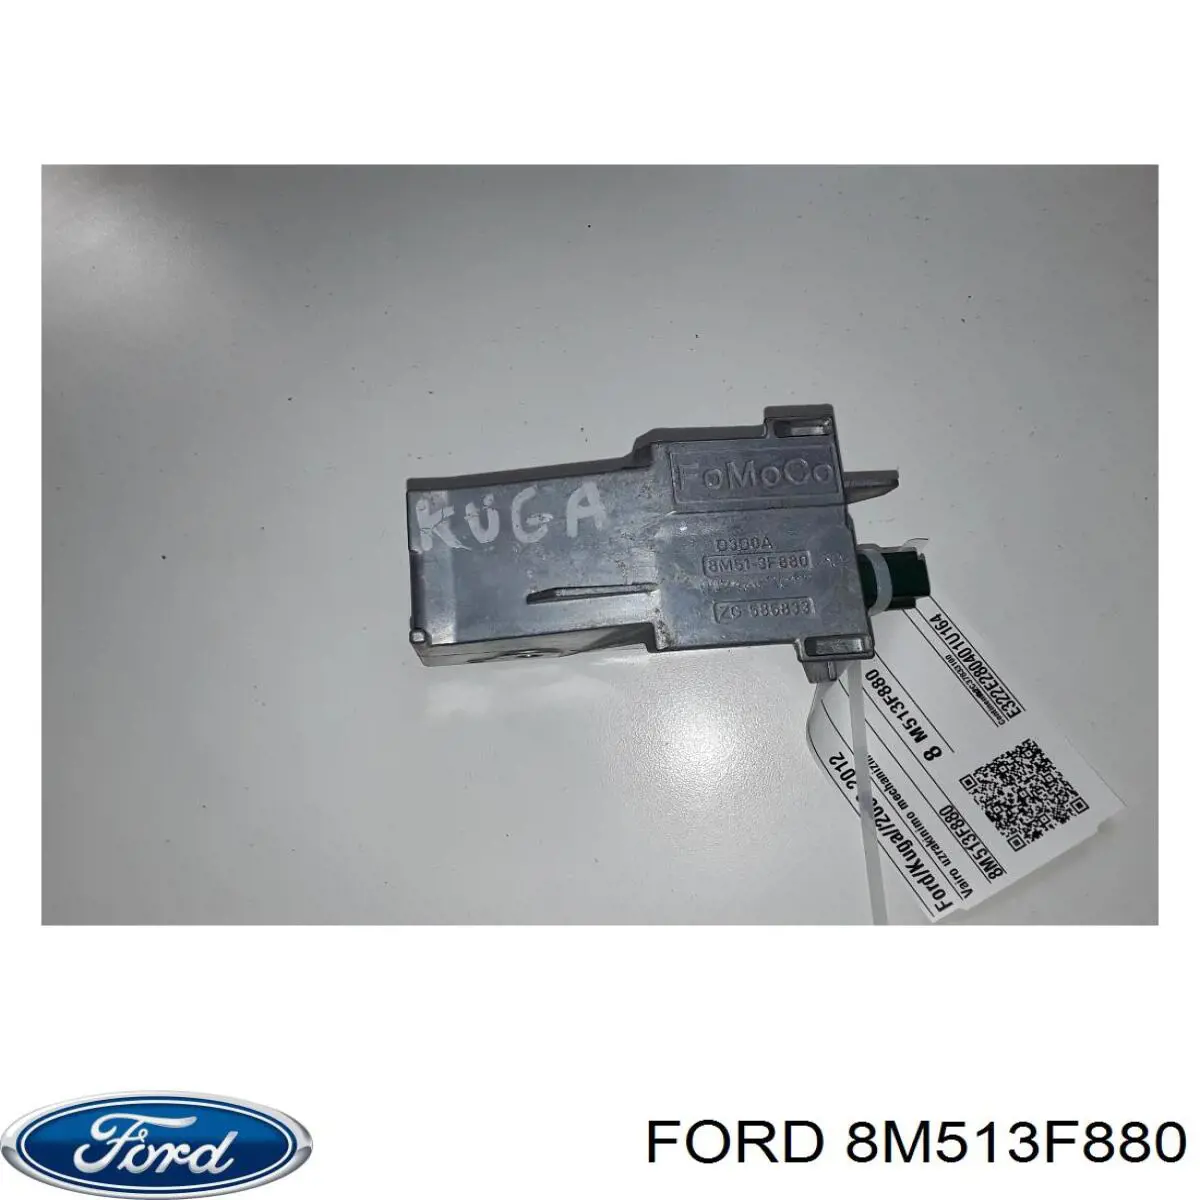 1508096 Ford electronica de columna de direccion